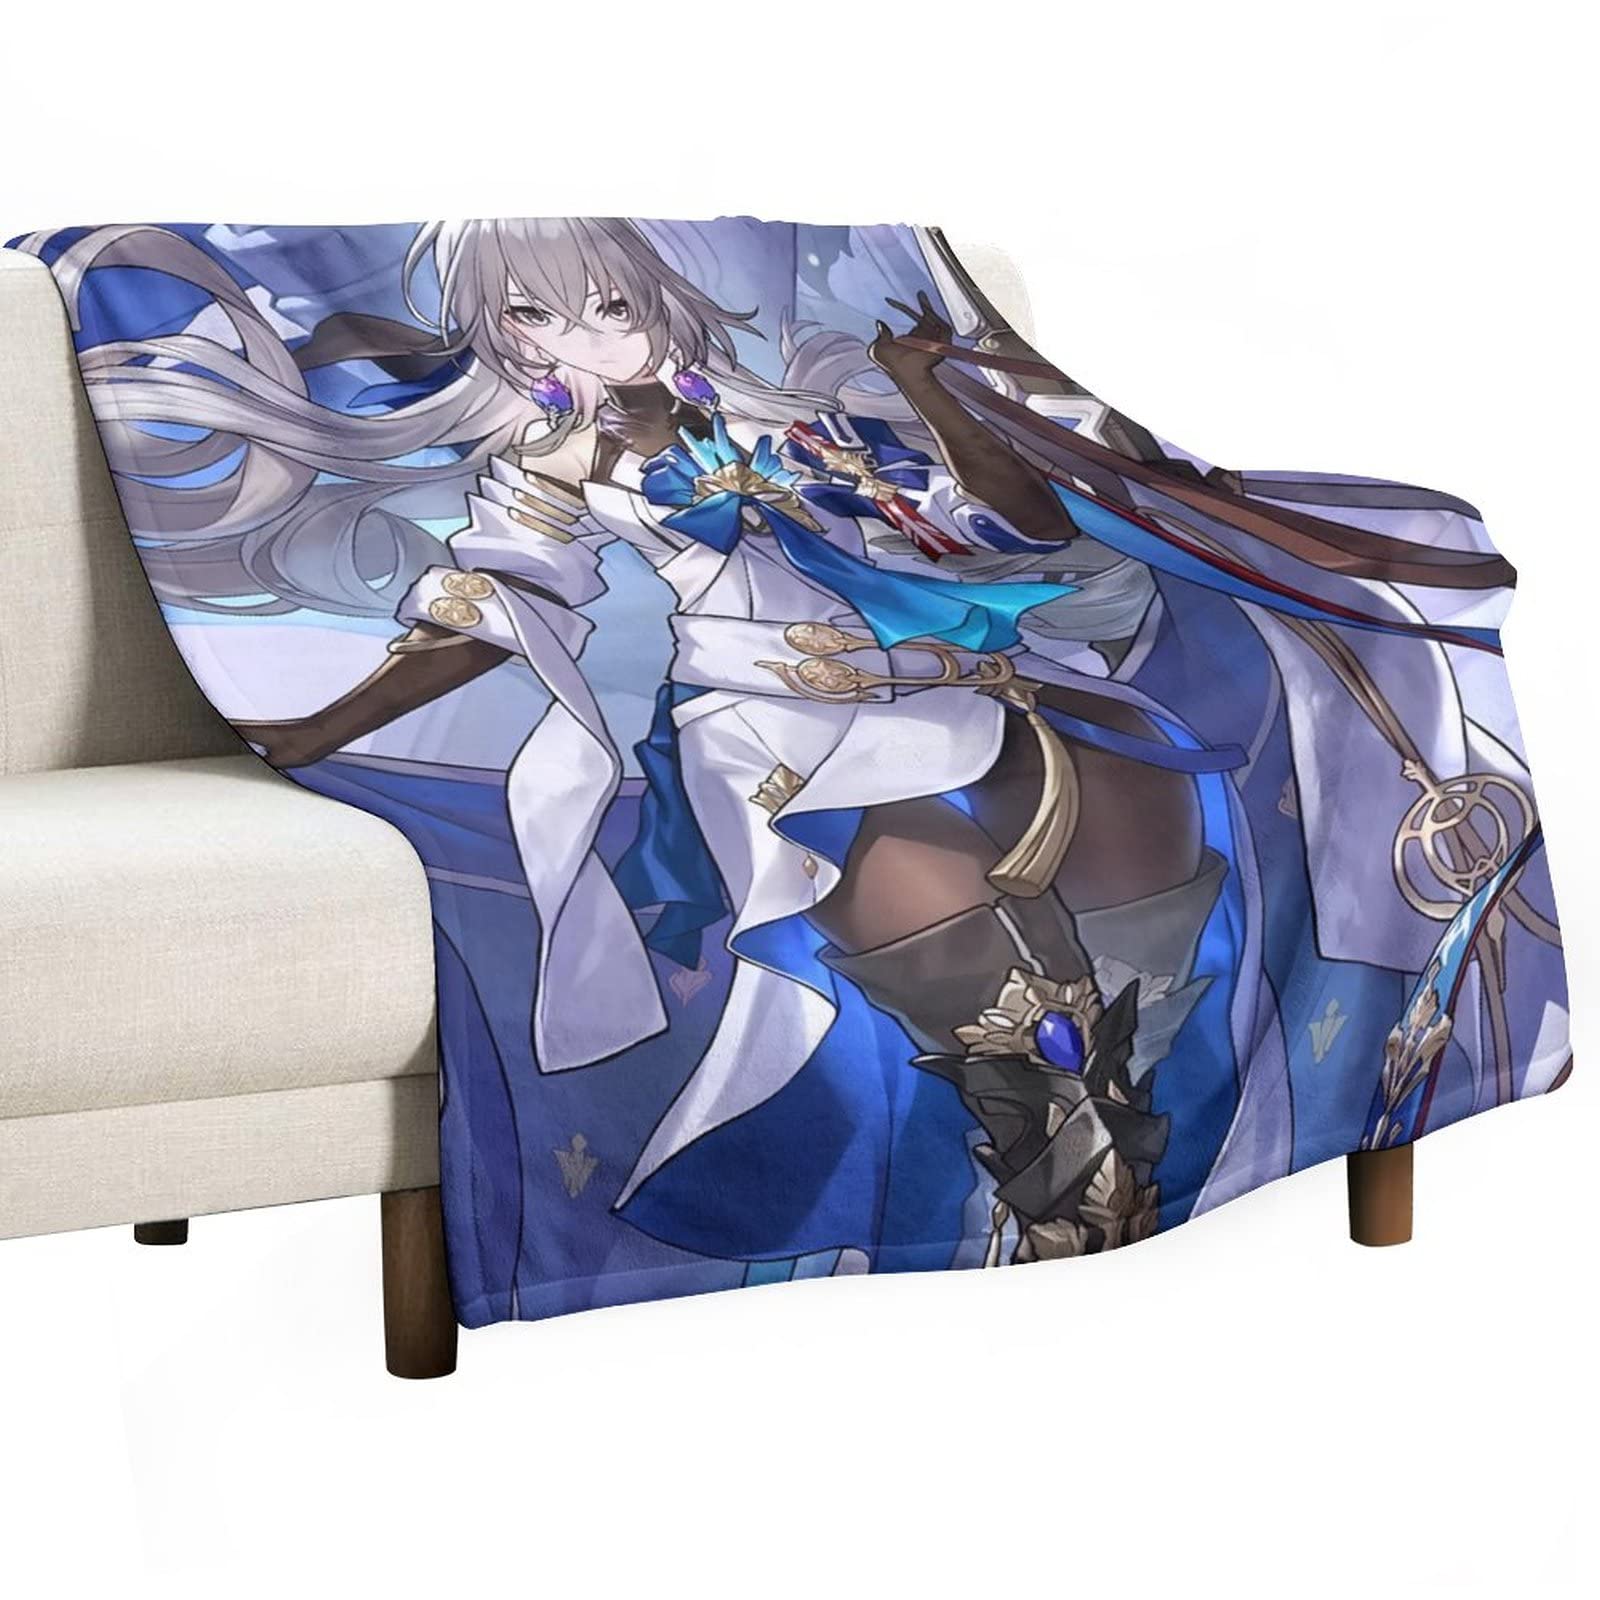 Gothic Anime Girl Blanket Anime Blanket | eBay